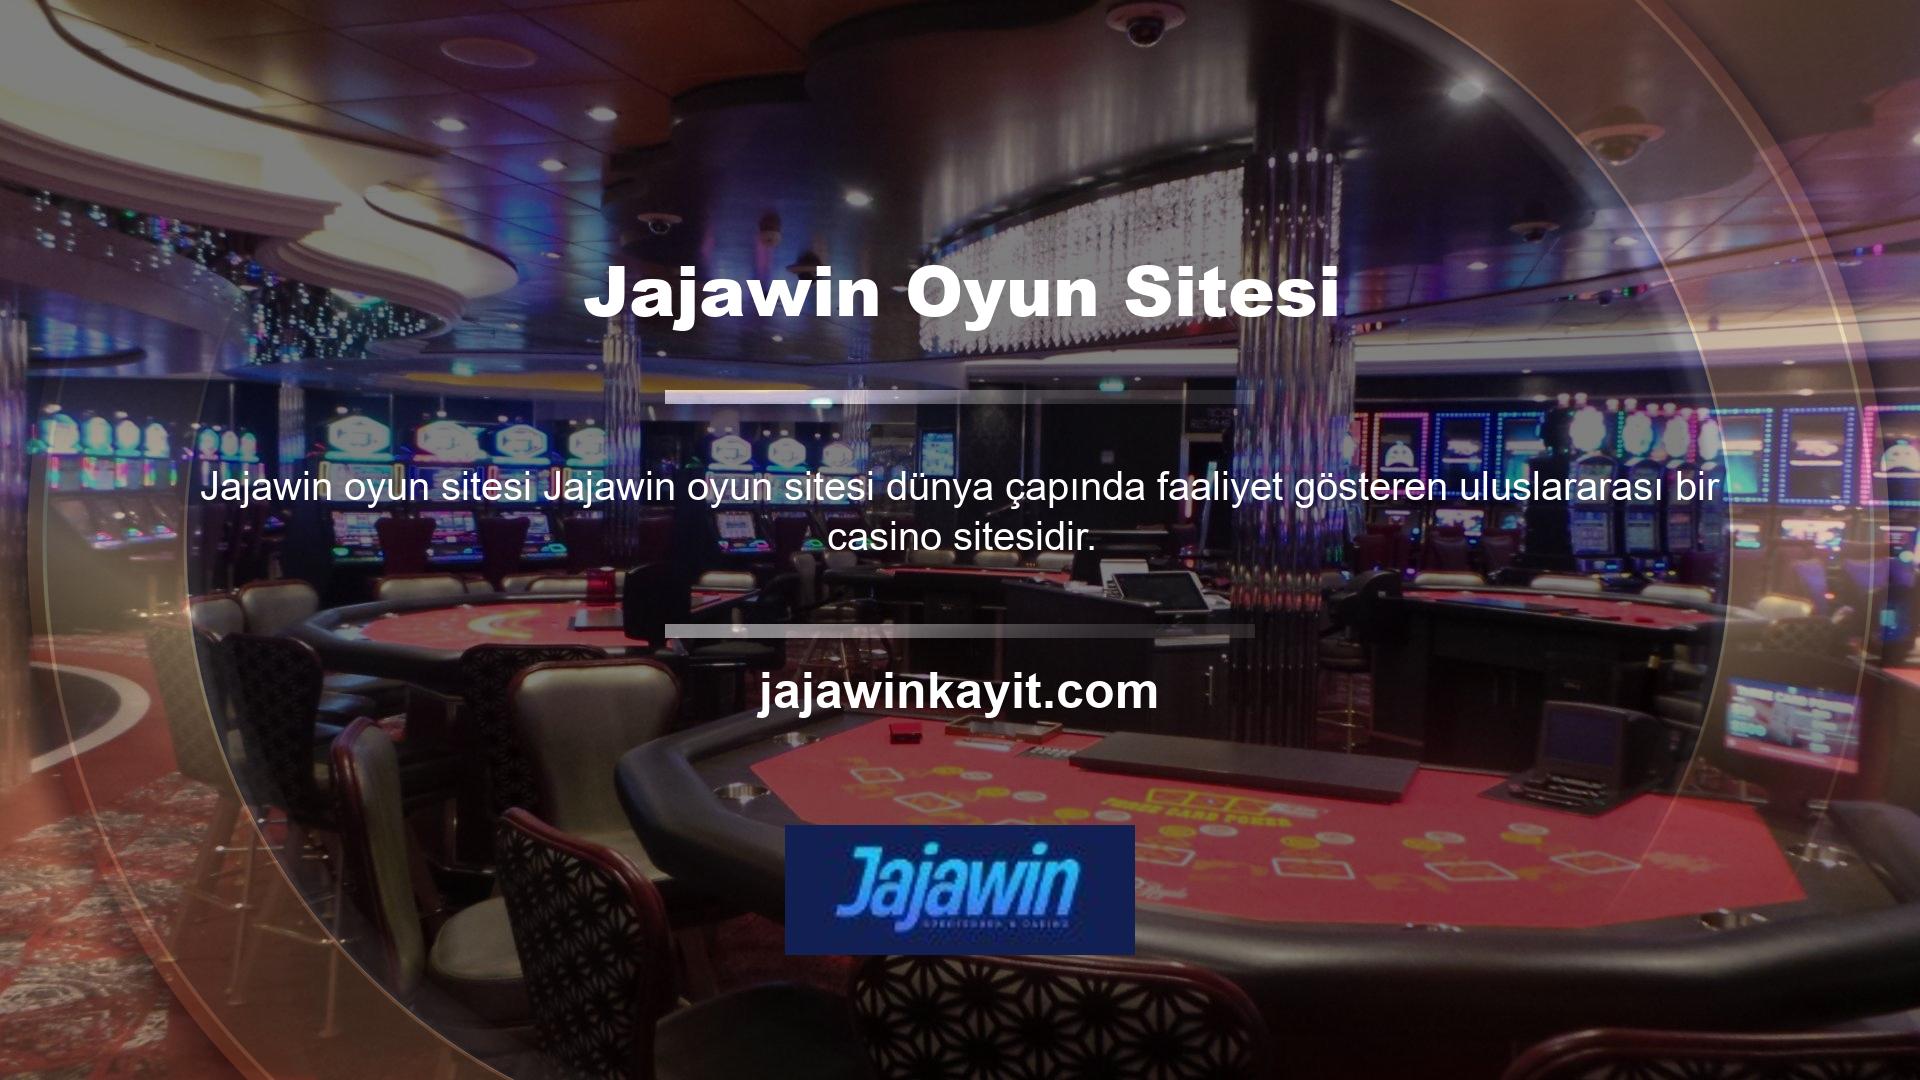 Kullanıcılar ayrıca kazançlarını ikiye katlama şansı veren Türkçe paketiyle Jajawin Casino sitesinin keyfini çıkarabilirler